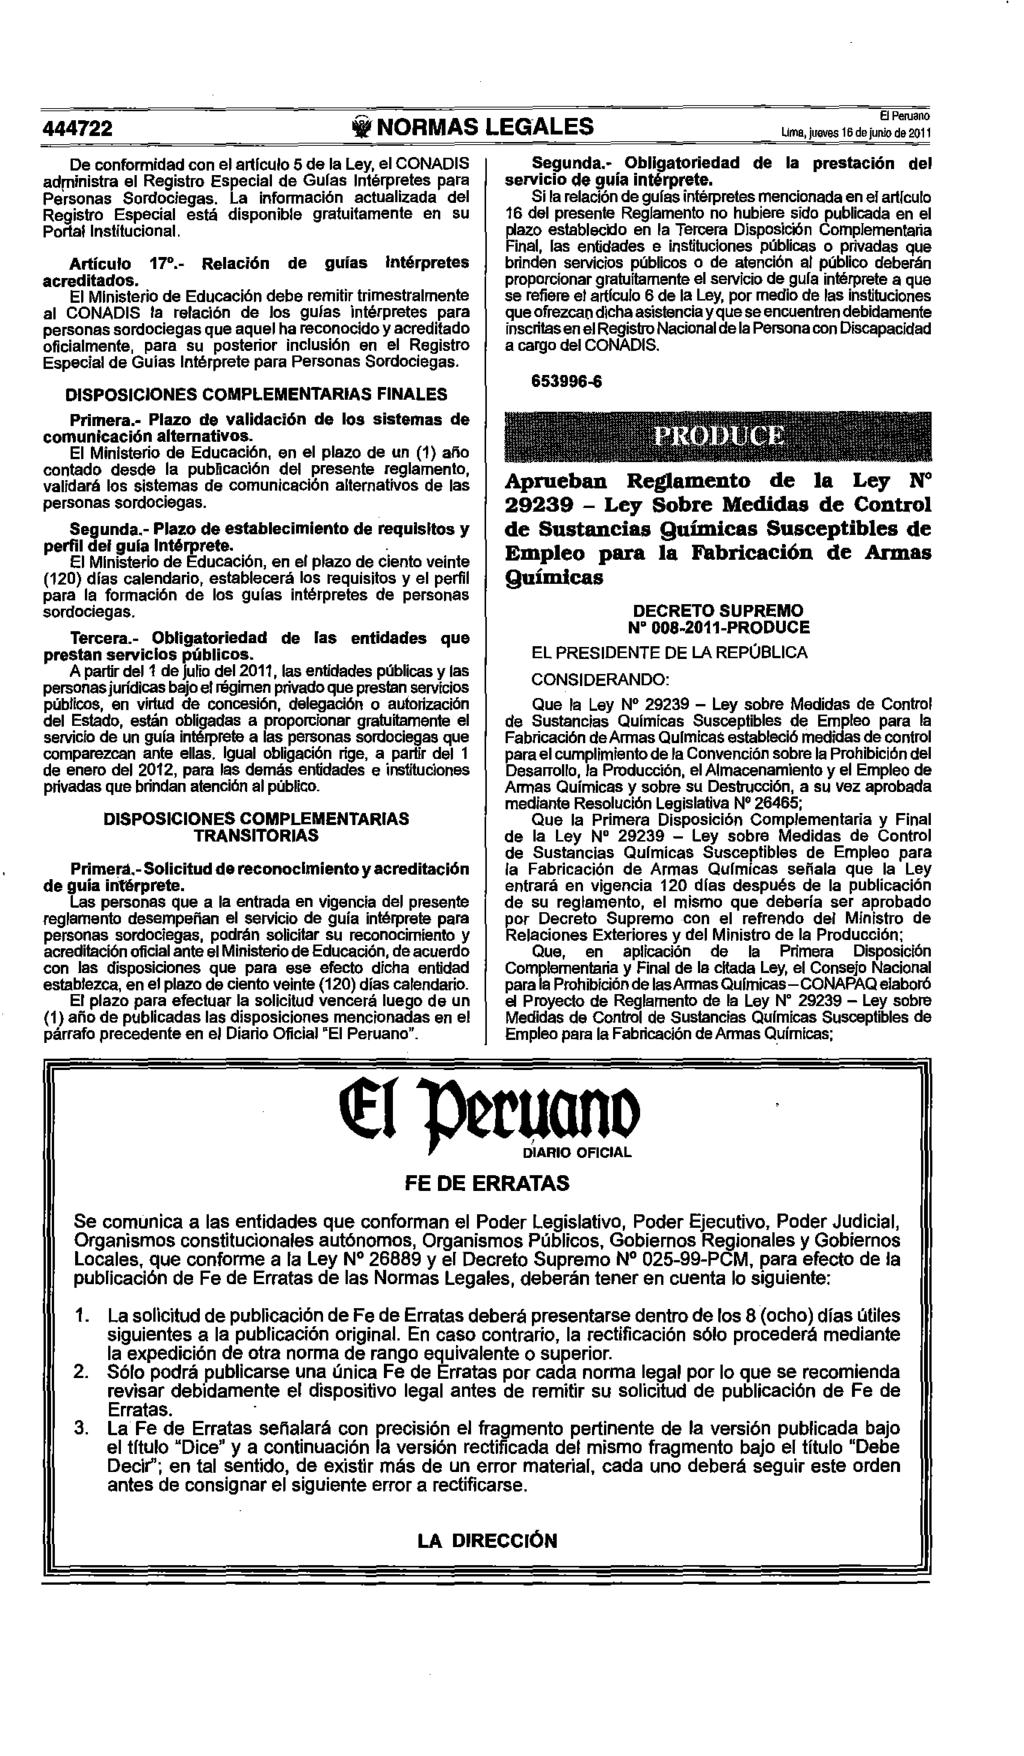 444722 ~NORMAS LEGALES Uma, jueves 16 de junio de 2011 De conformidad con el articulo 5 de la Ley, el CONADIS administra el Registro Especial de Guias Intérpretes para Personas Sordociegas.